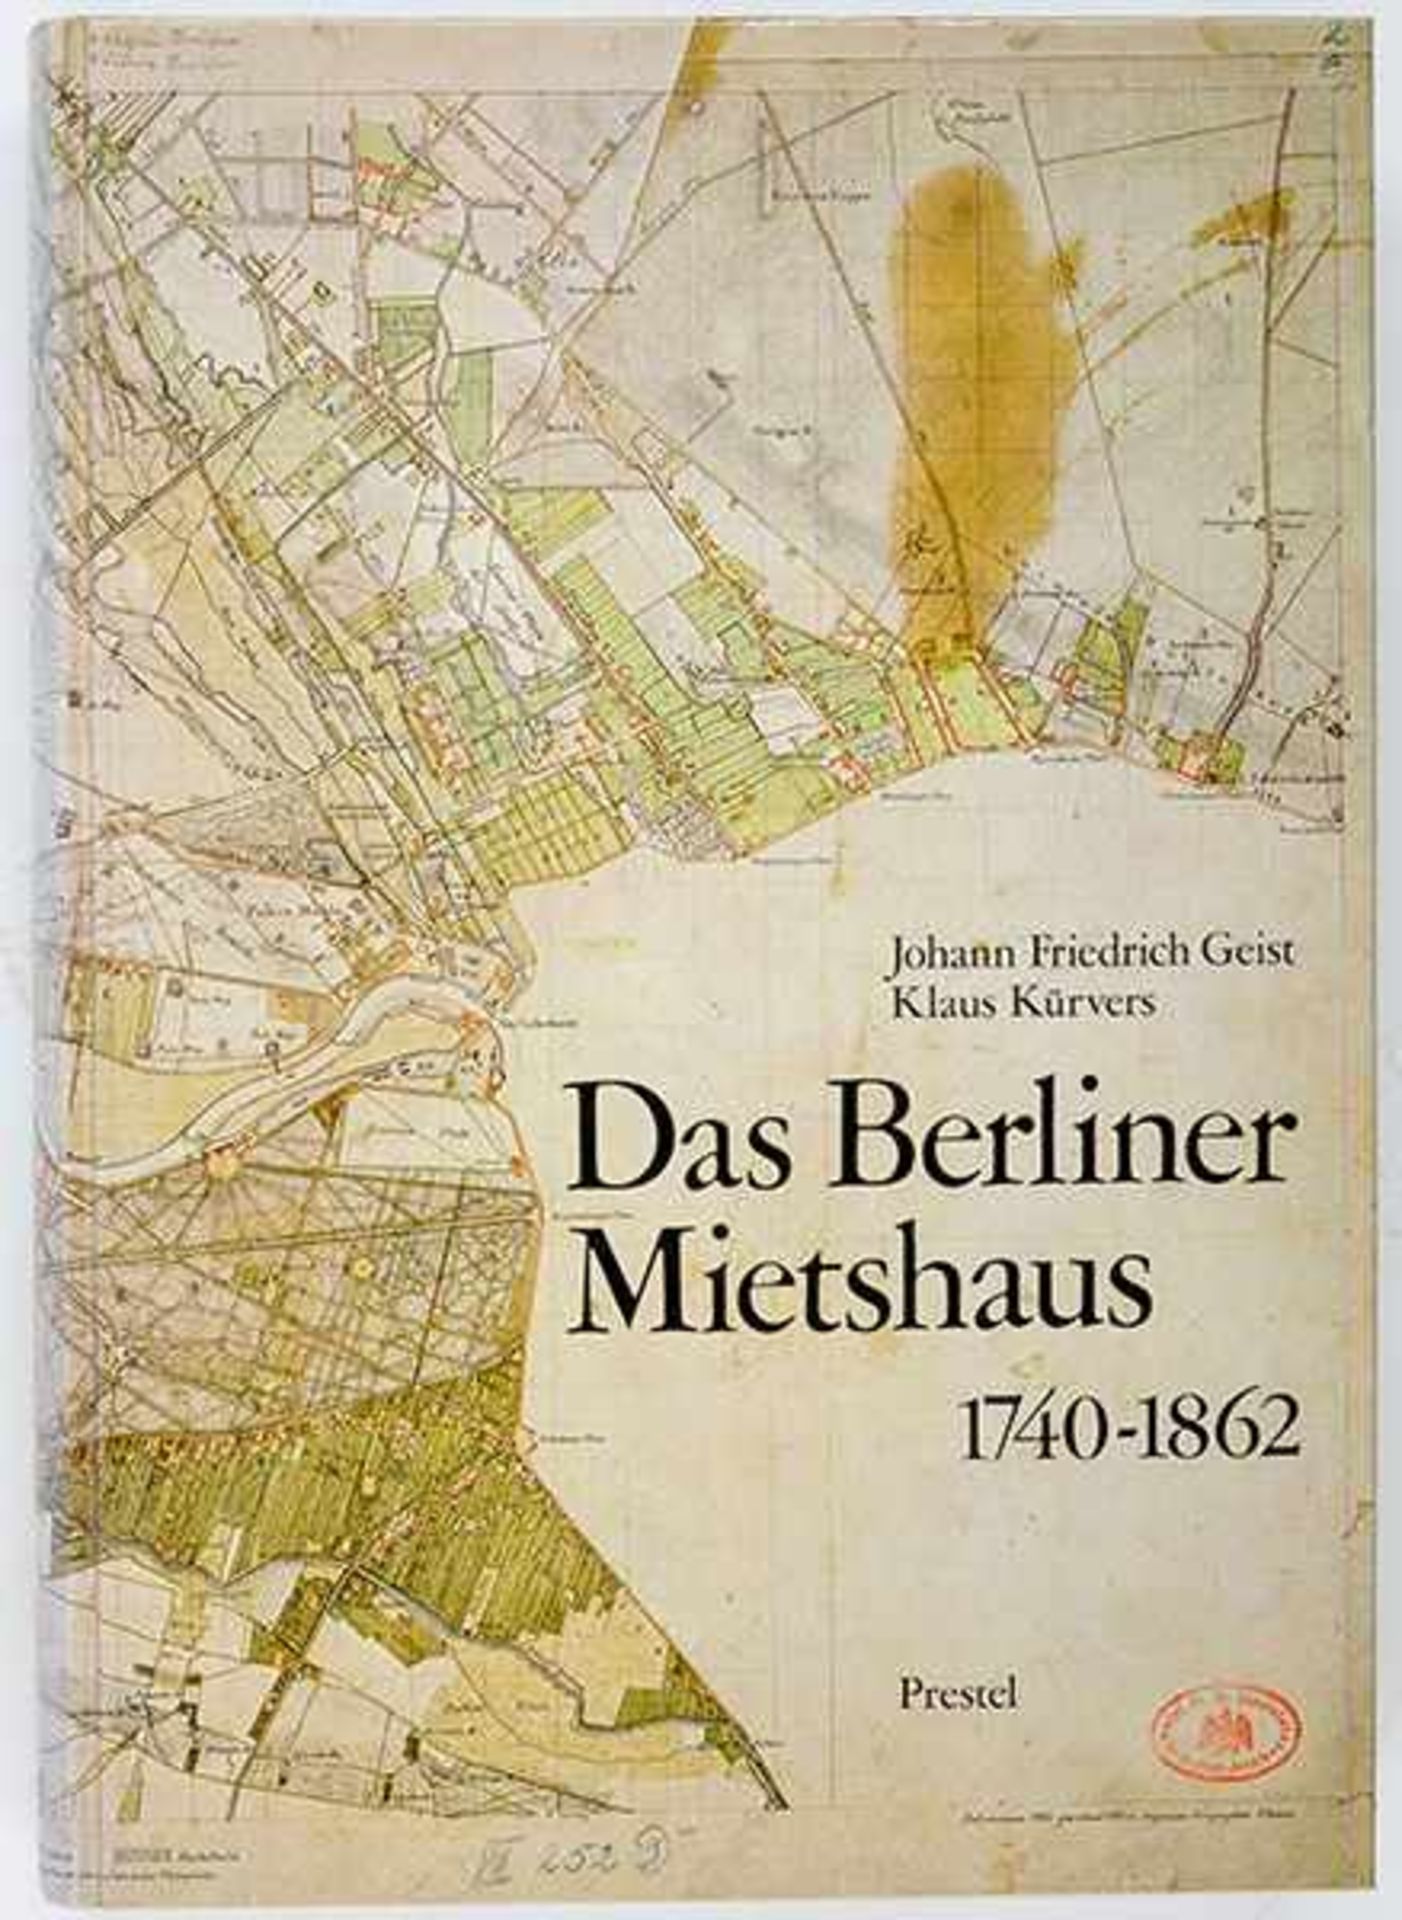 Deutschland - Berlin - - Geist, Johann Friedrich und Klaus Kürvers. Das Berliner Mietshaus. 3 Bände.